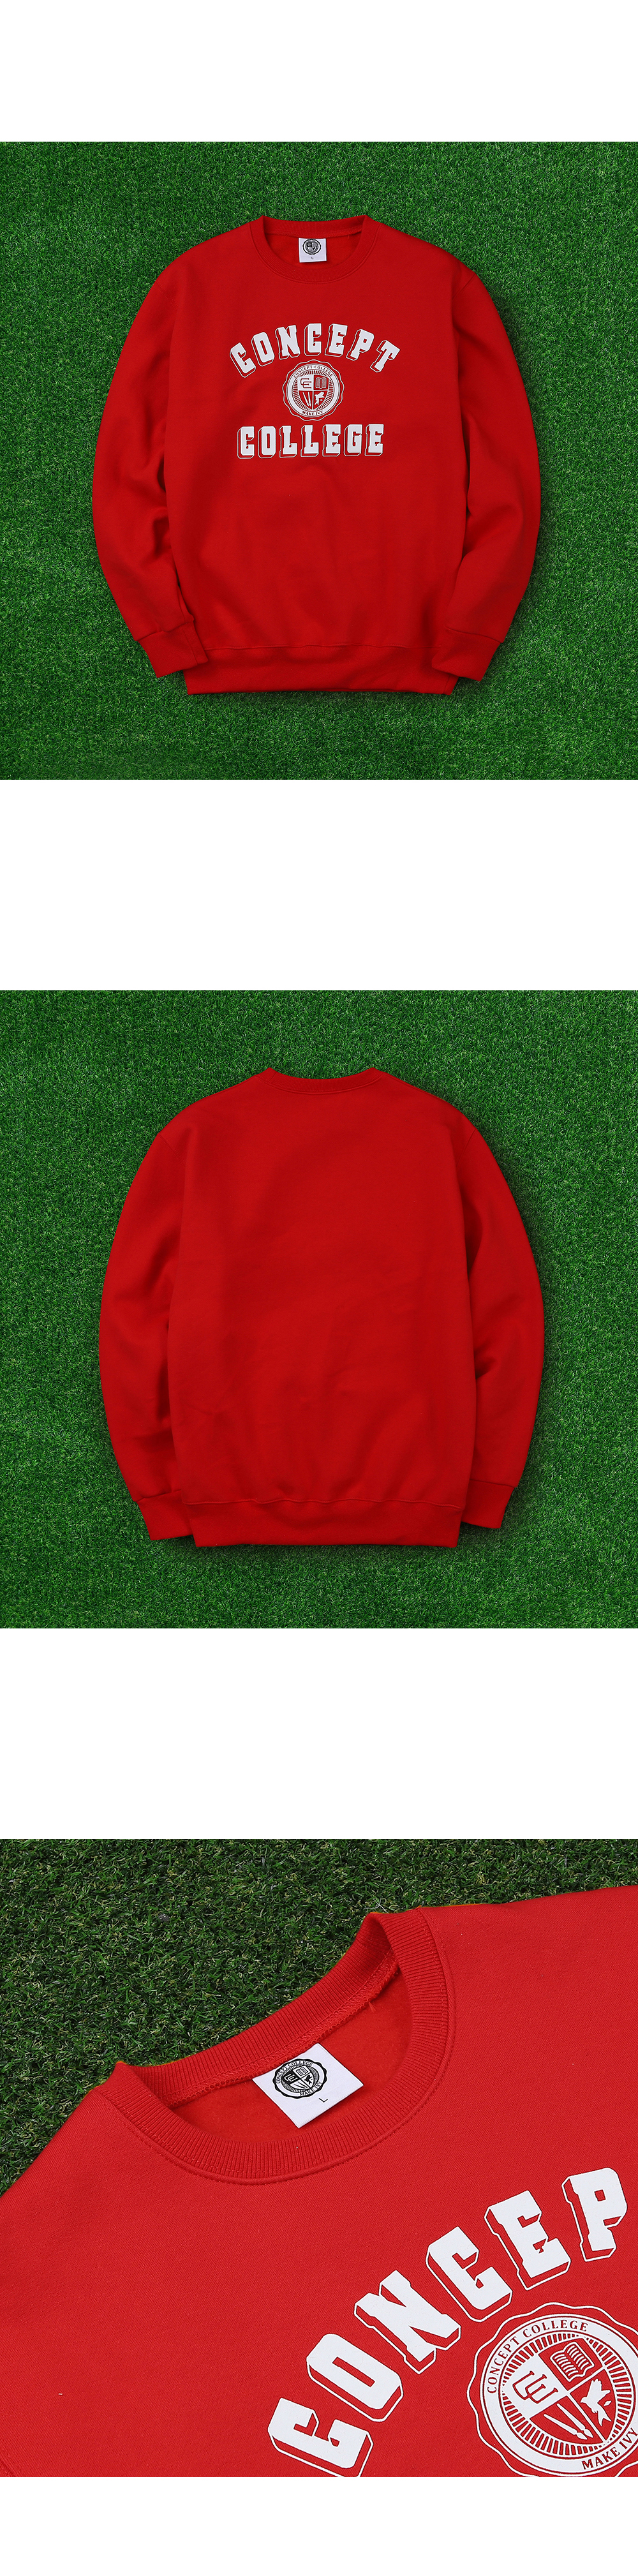 logo+red+sweat+shirts+3.jpg